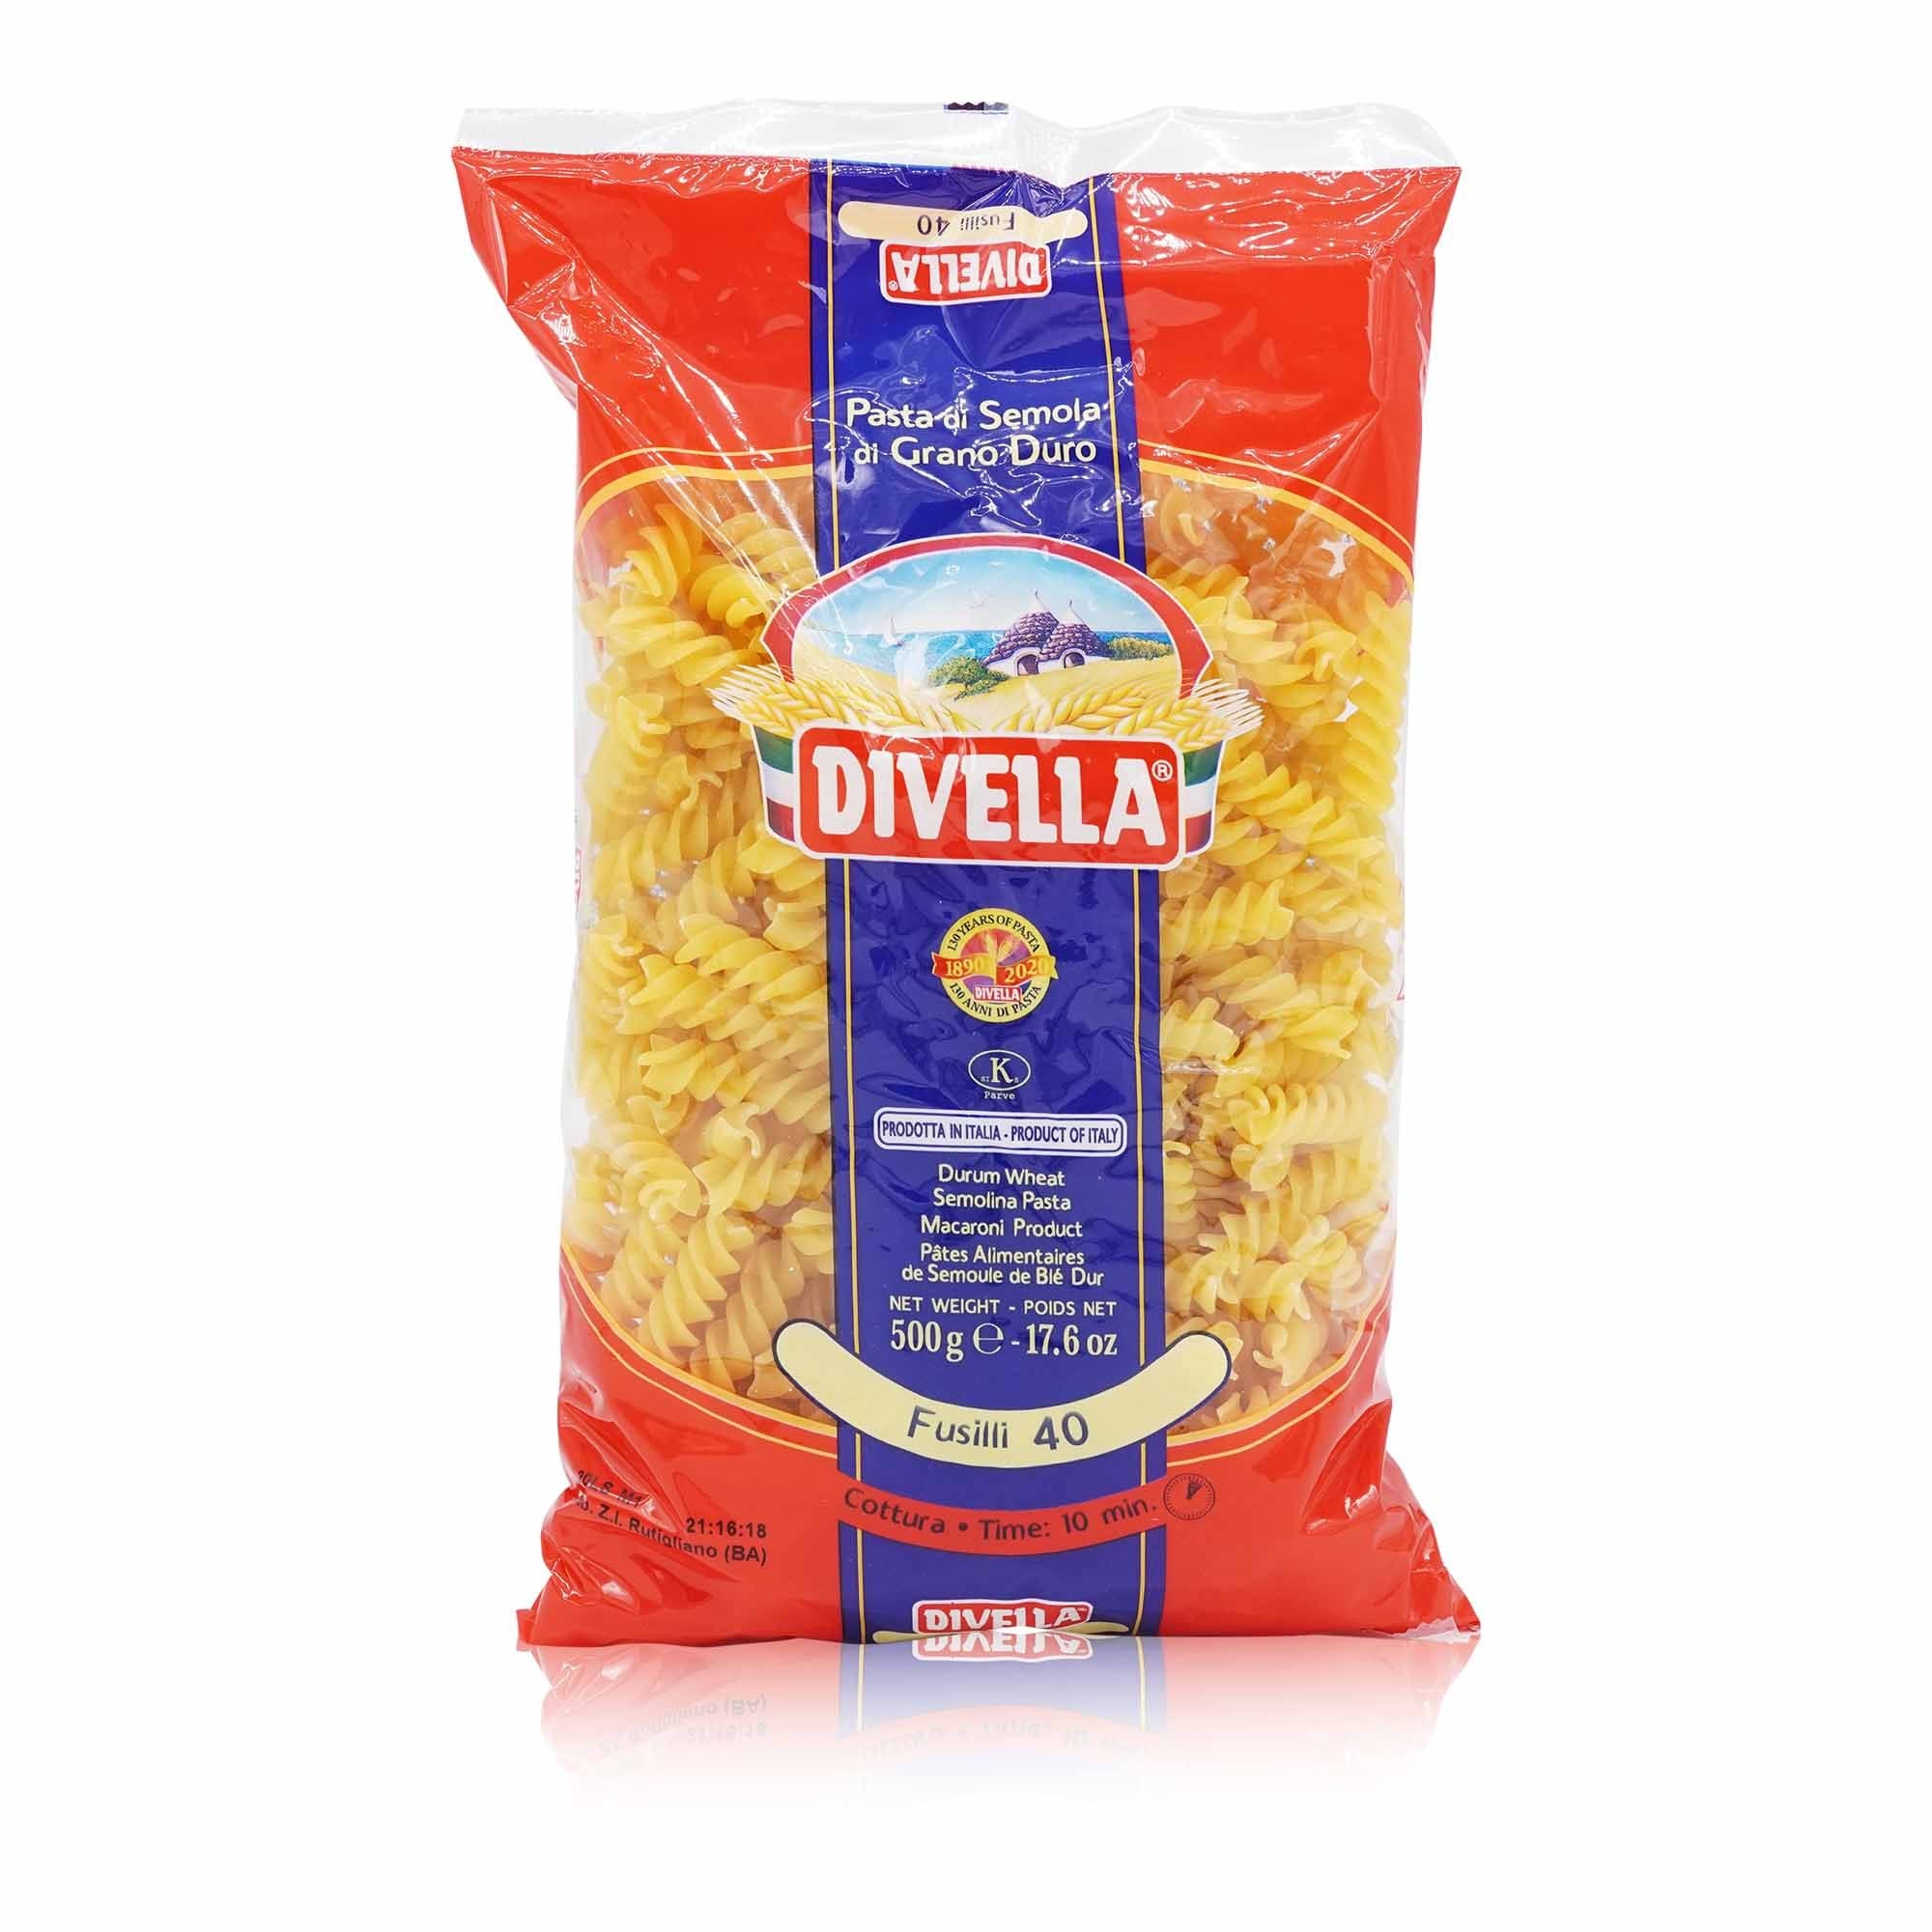 DIVELLA - Fusilli Nr. 40 - 0,5kg - italienisch - einkaufen.de